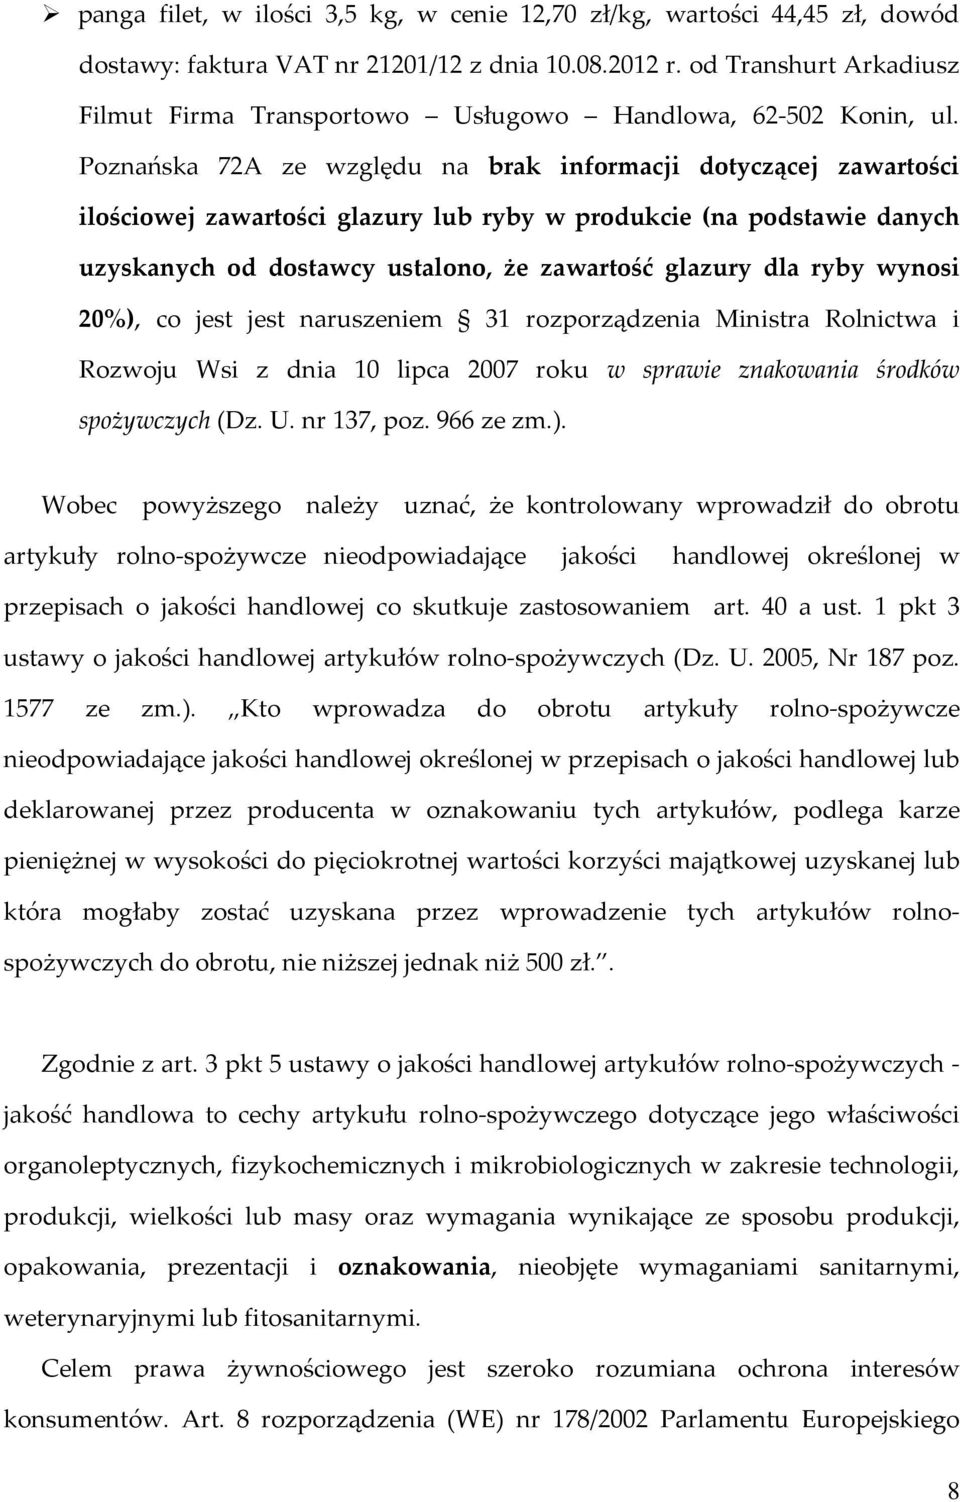 Poznańska 72A ze względu na brak informacji dotyczącej zawartości ilościowej zawartości glazury lub ryby w produkcie (na podstawie danych uzyskanych od dostawcy ustalono, że zawartość glazury dla